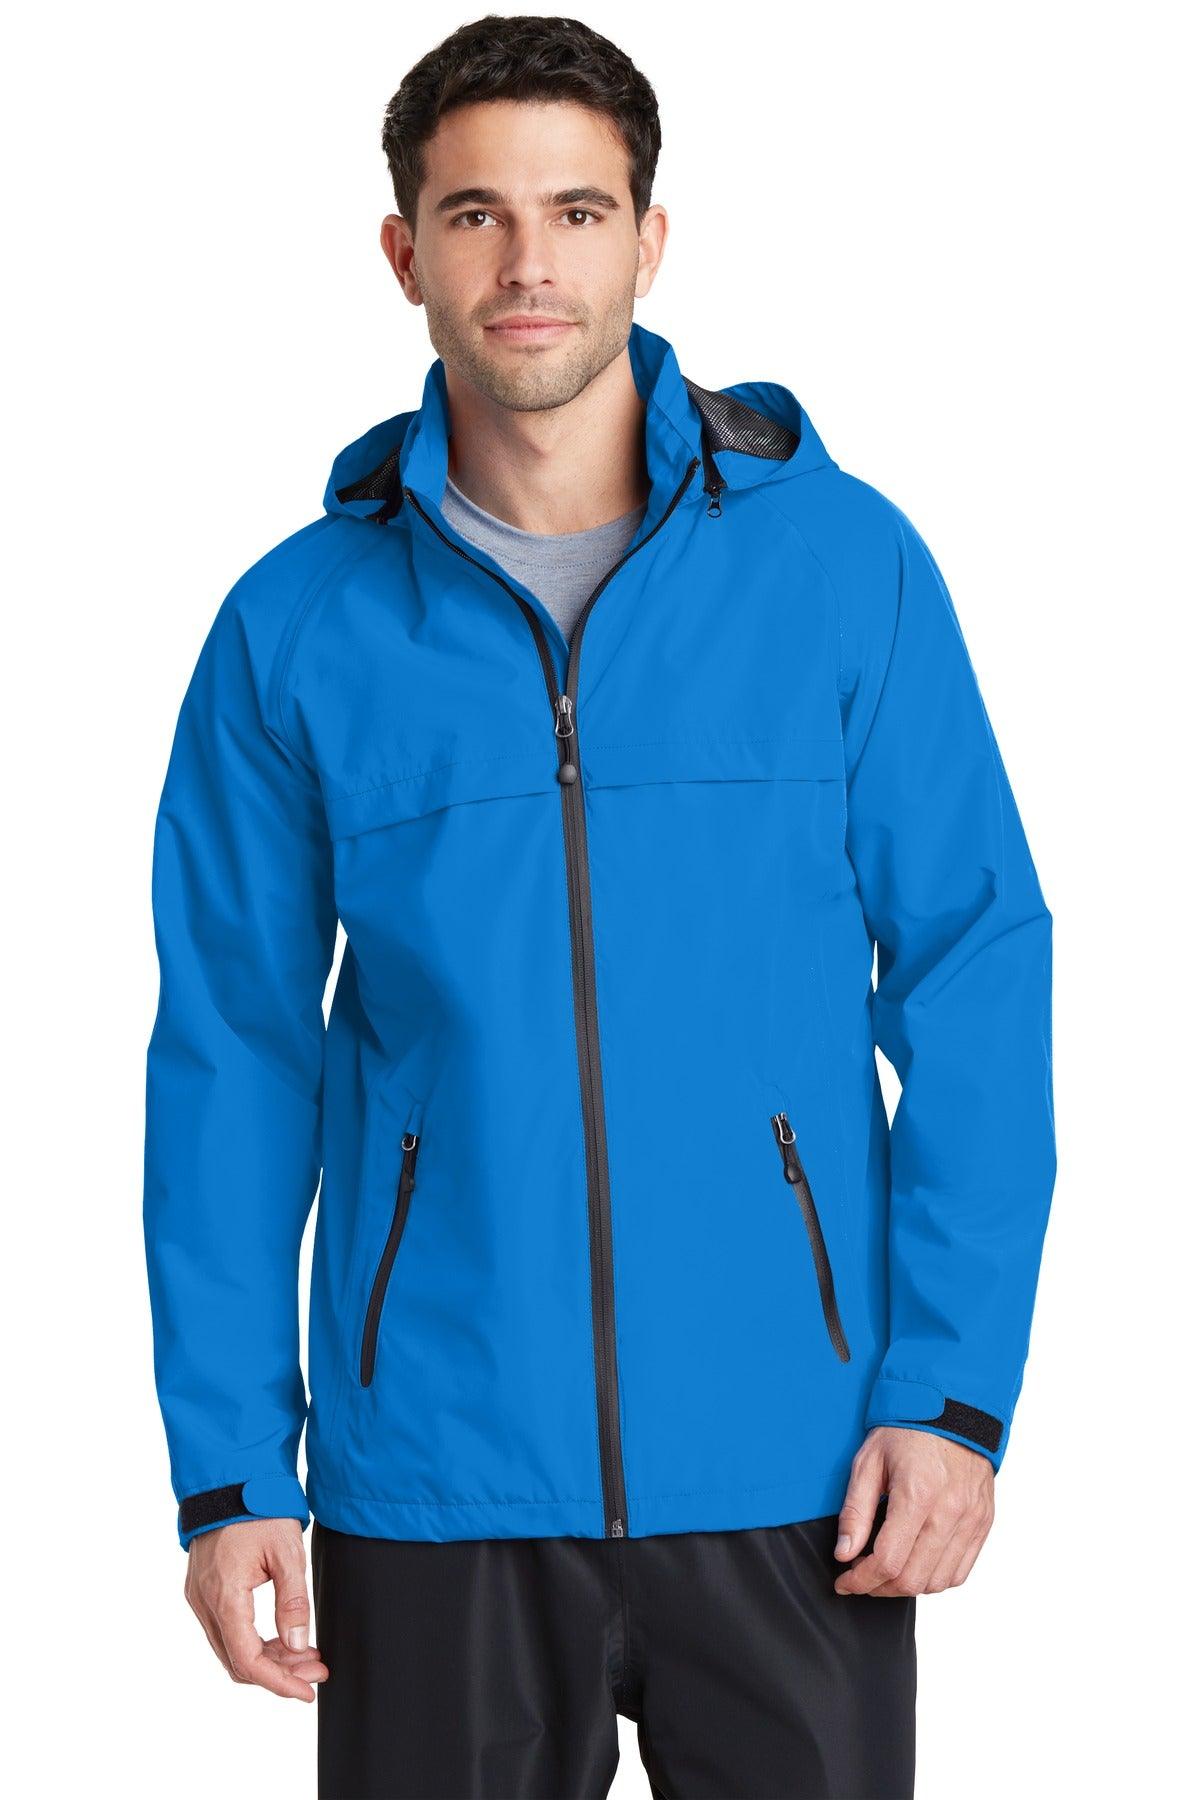 Port Authority Torrent Waterproof Jacket. J333 - Dresses Max